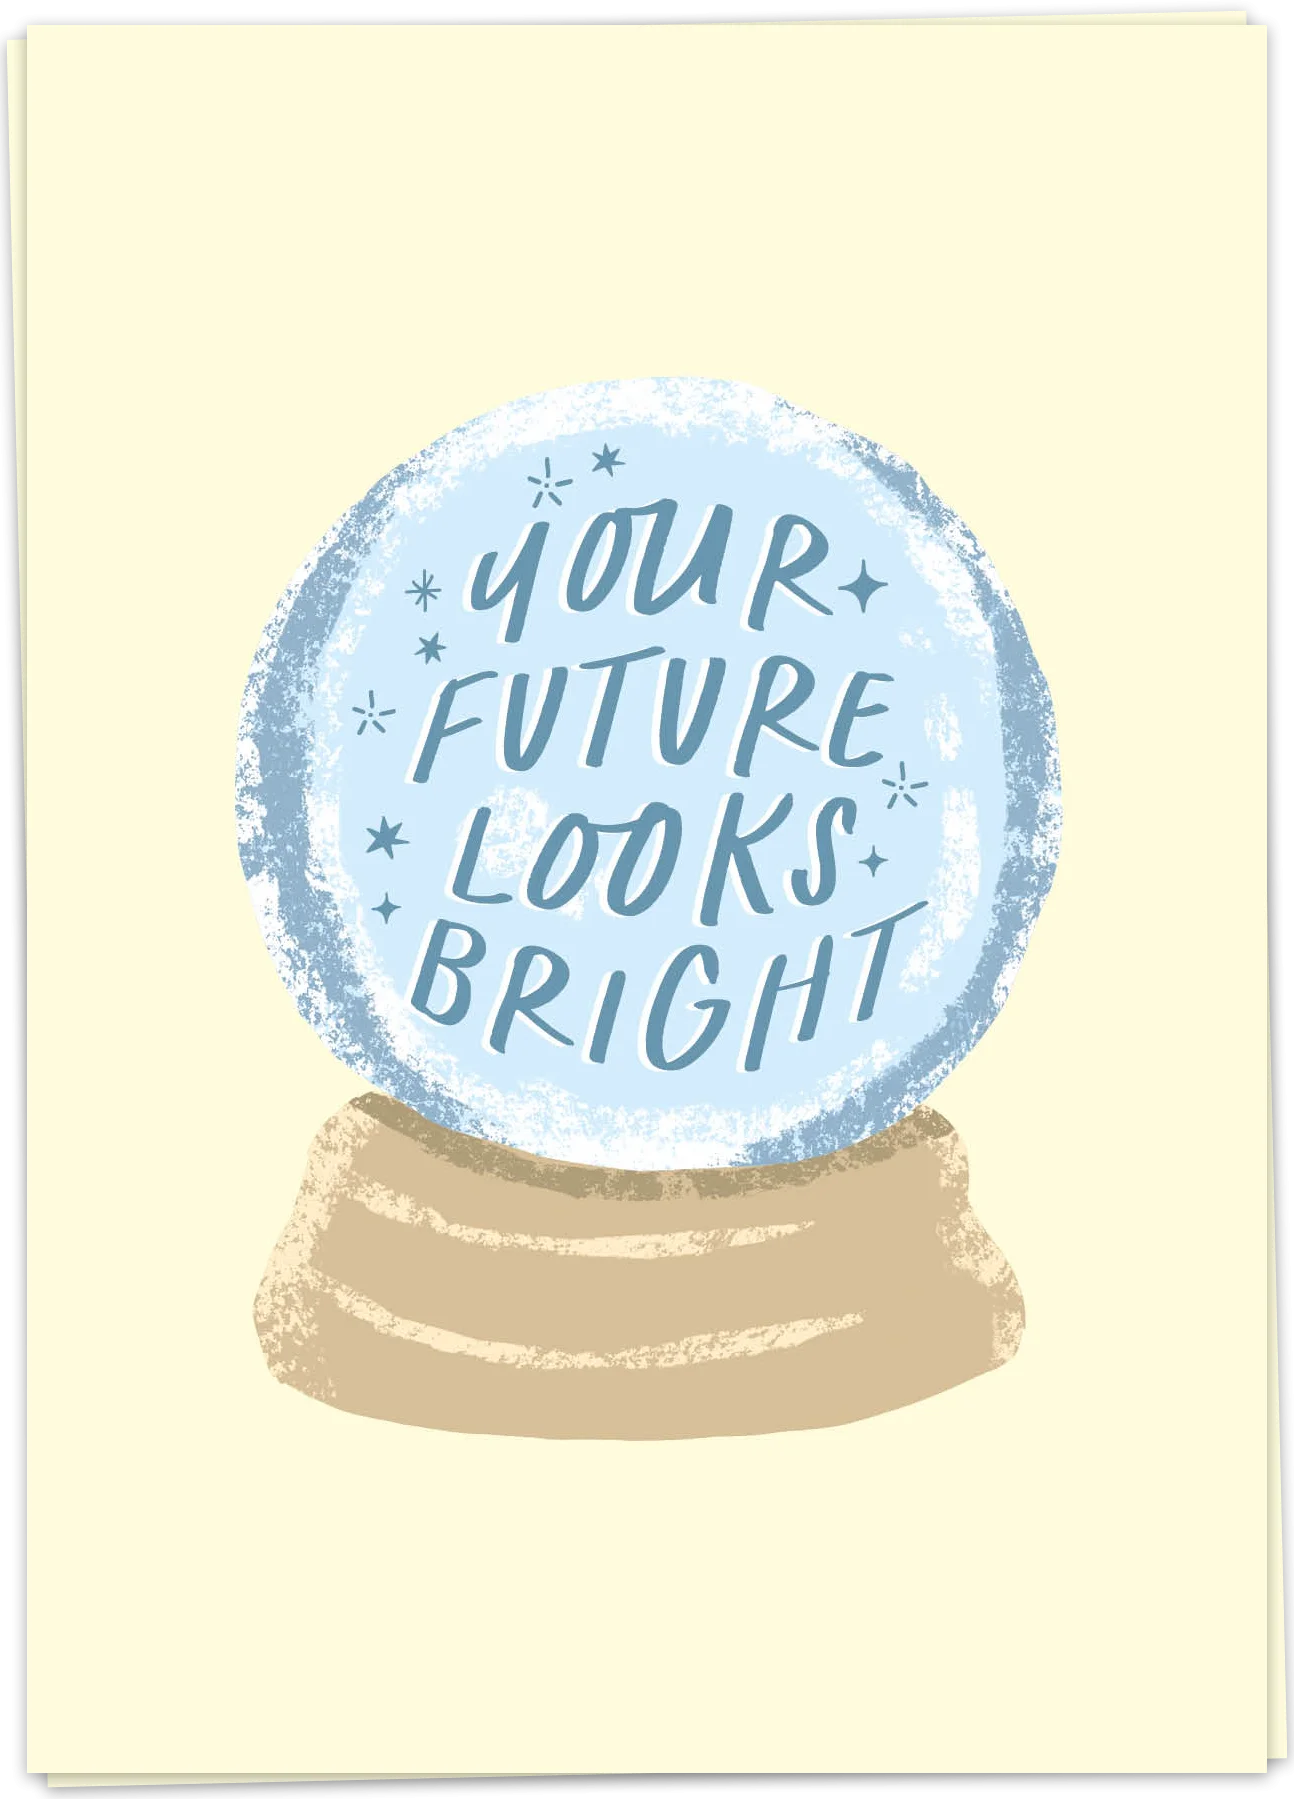 Bright future